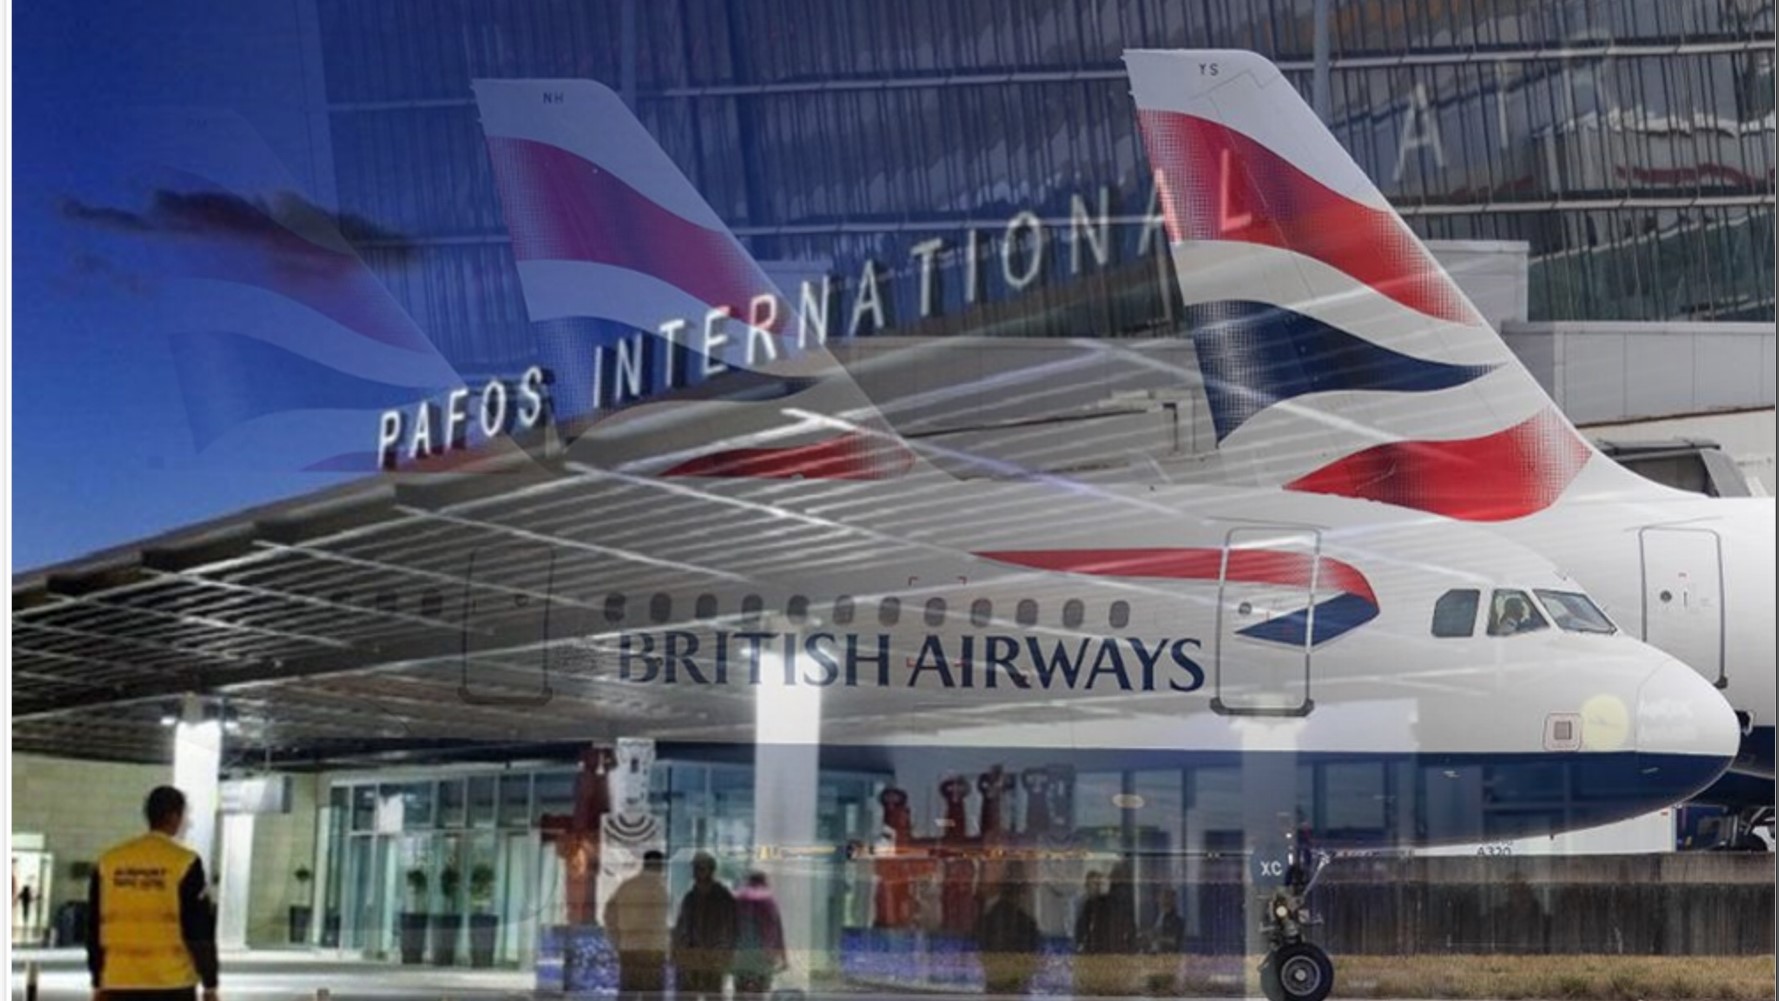 Πάφος: Προσγείωση αεροσκάφους της British Airways στο αεροδρόμιο Πάφου ύστερα από οσμή καυσίμων